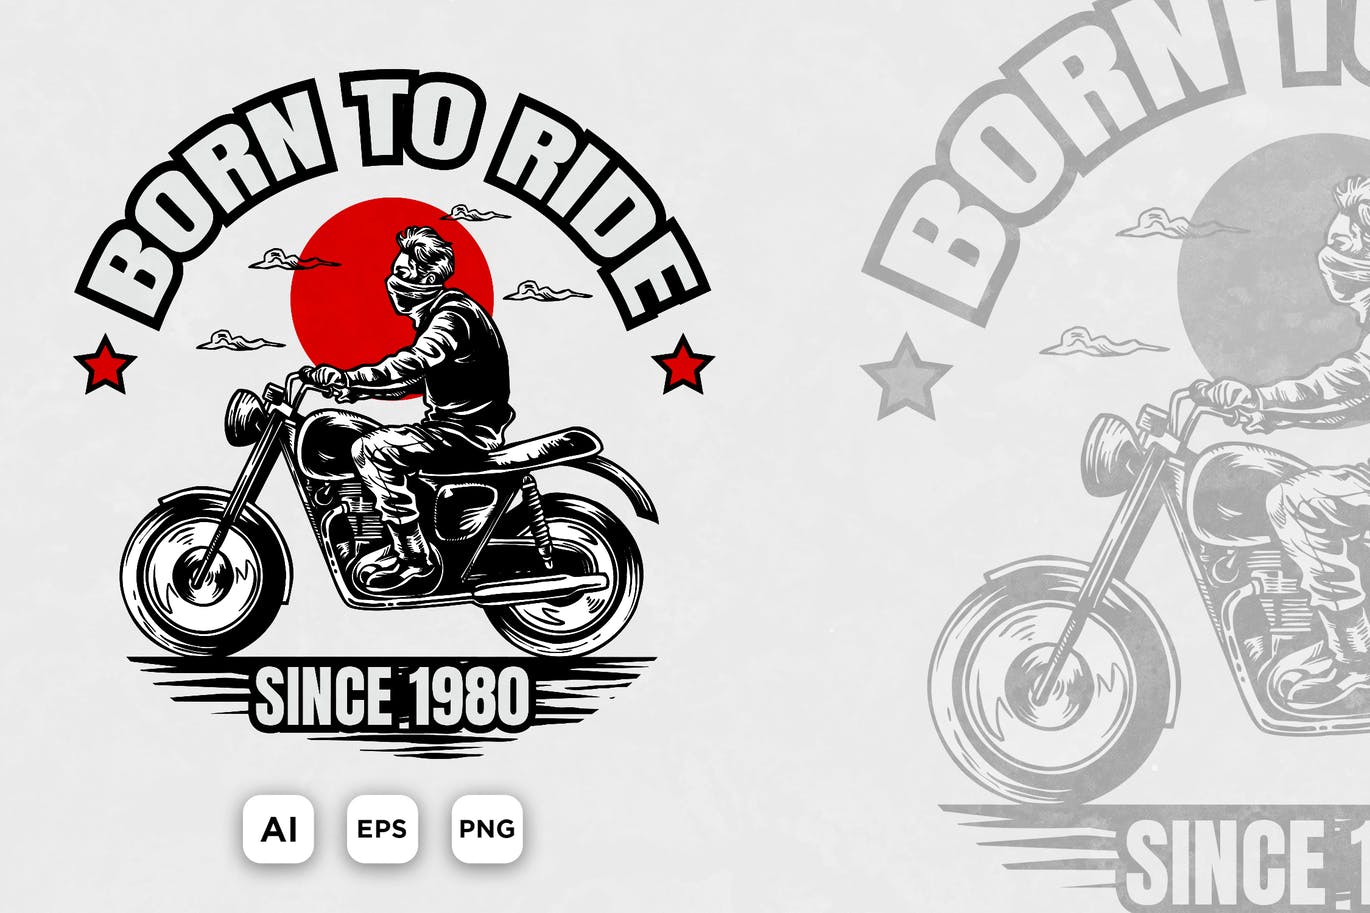 经典复古风格的摩托车骑士矢量插画设计模板aiepspng